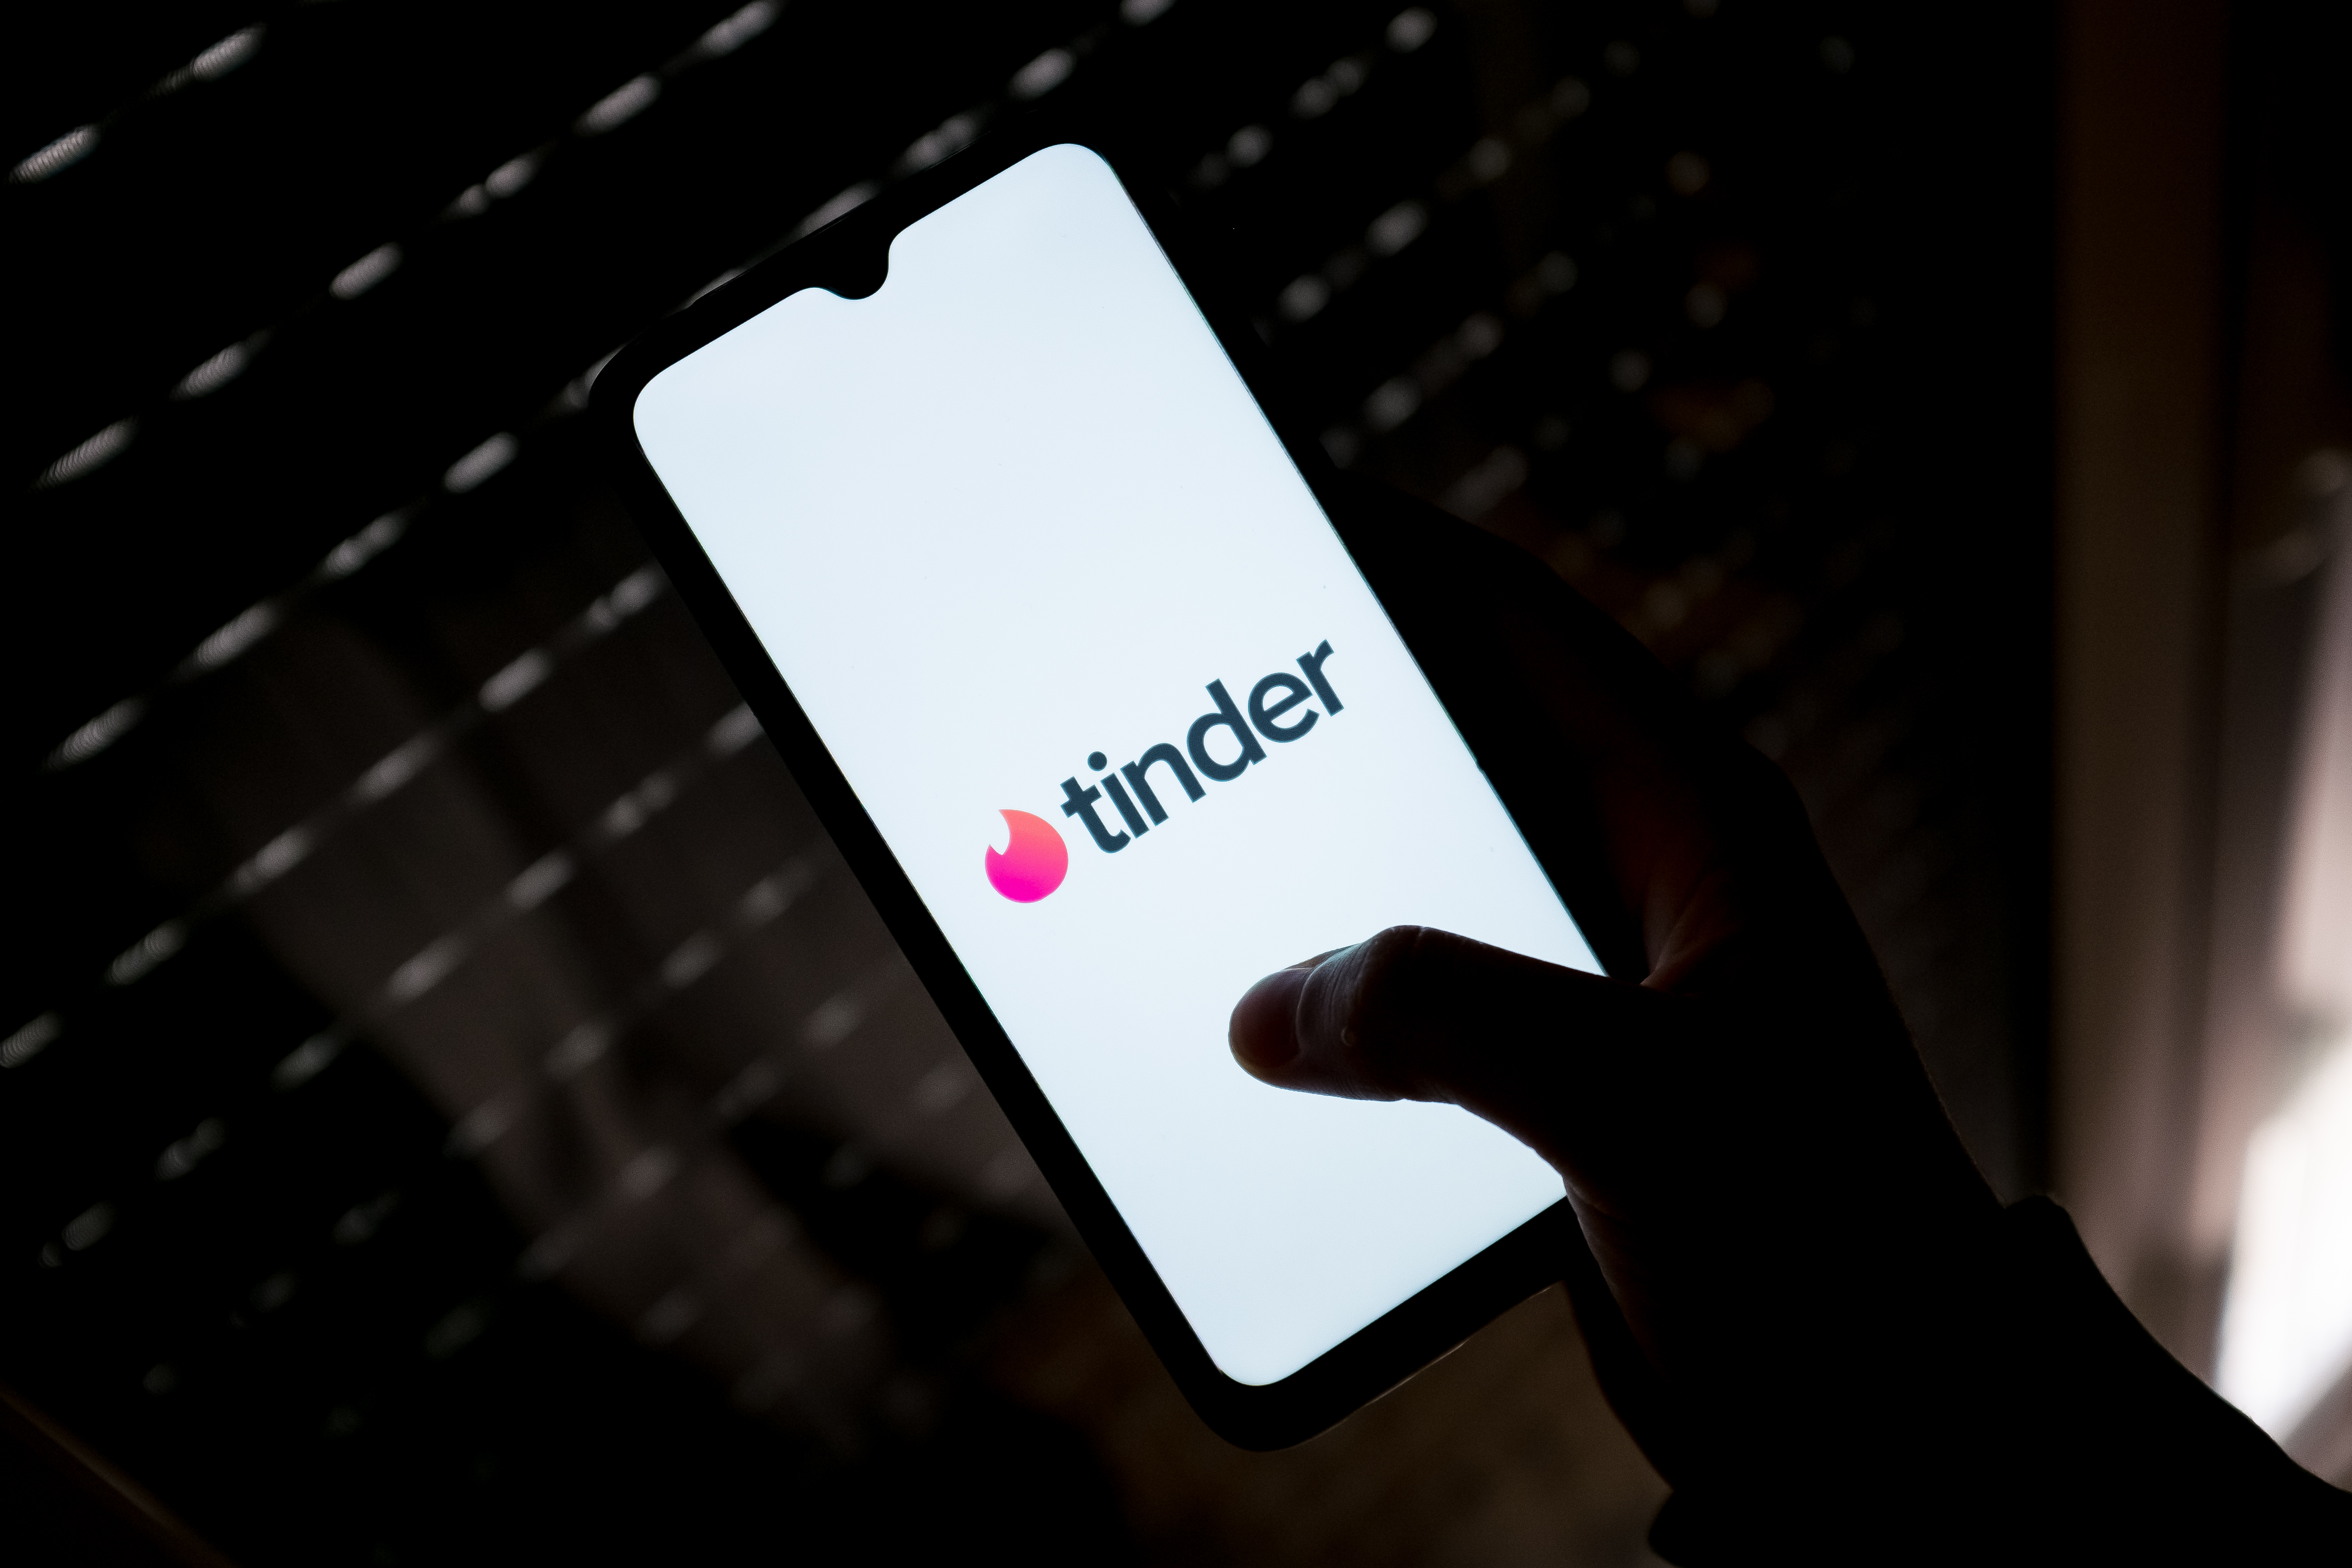 Meta da carpetazo a Tuned, su app para parejas : Applicantes – Información  sobre apps y juegos para móviles